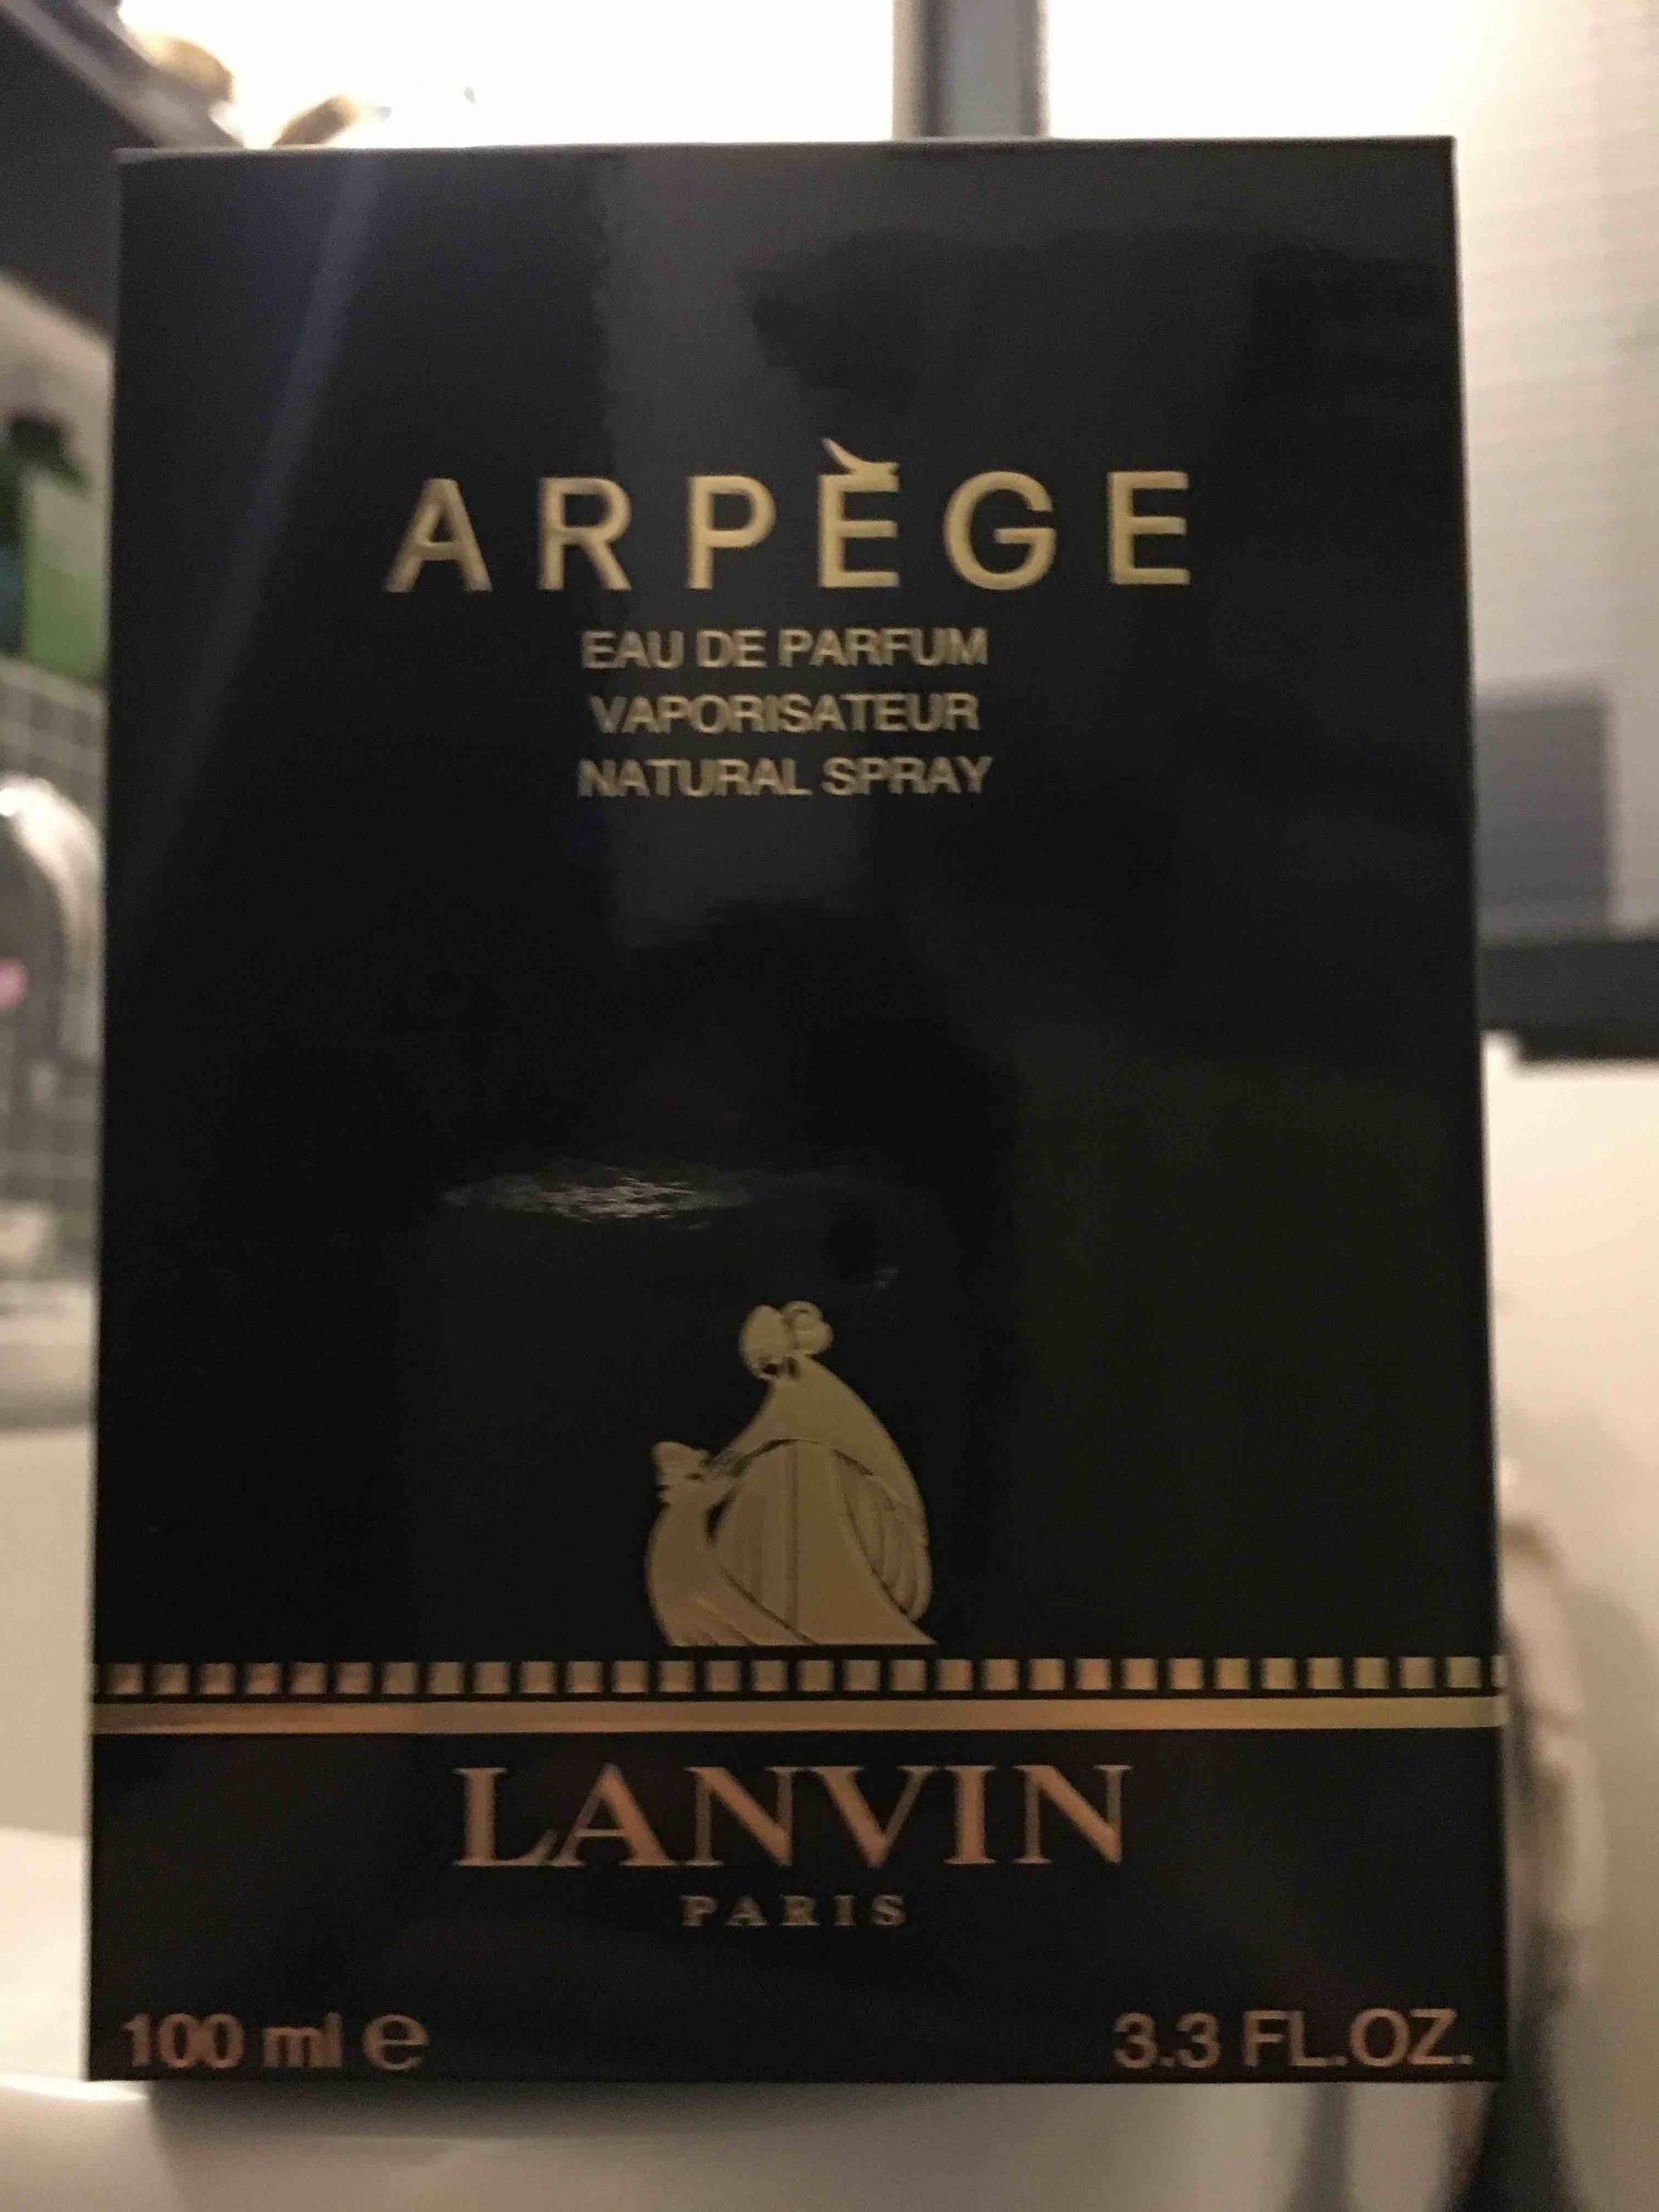 LANVIN - Arpège - Eau de parfum